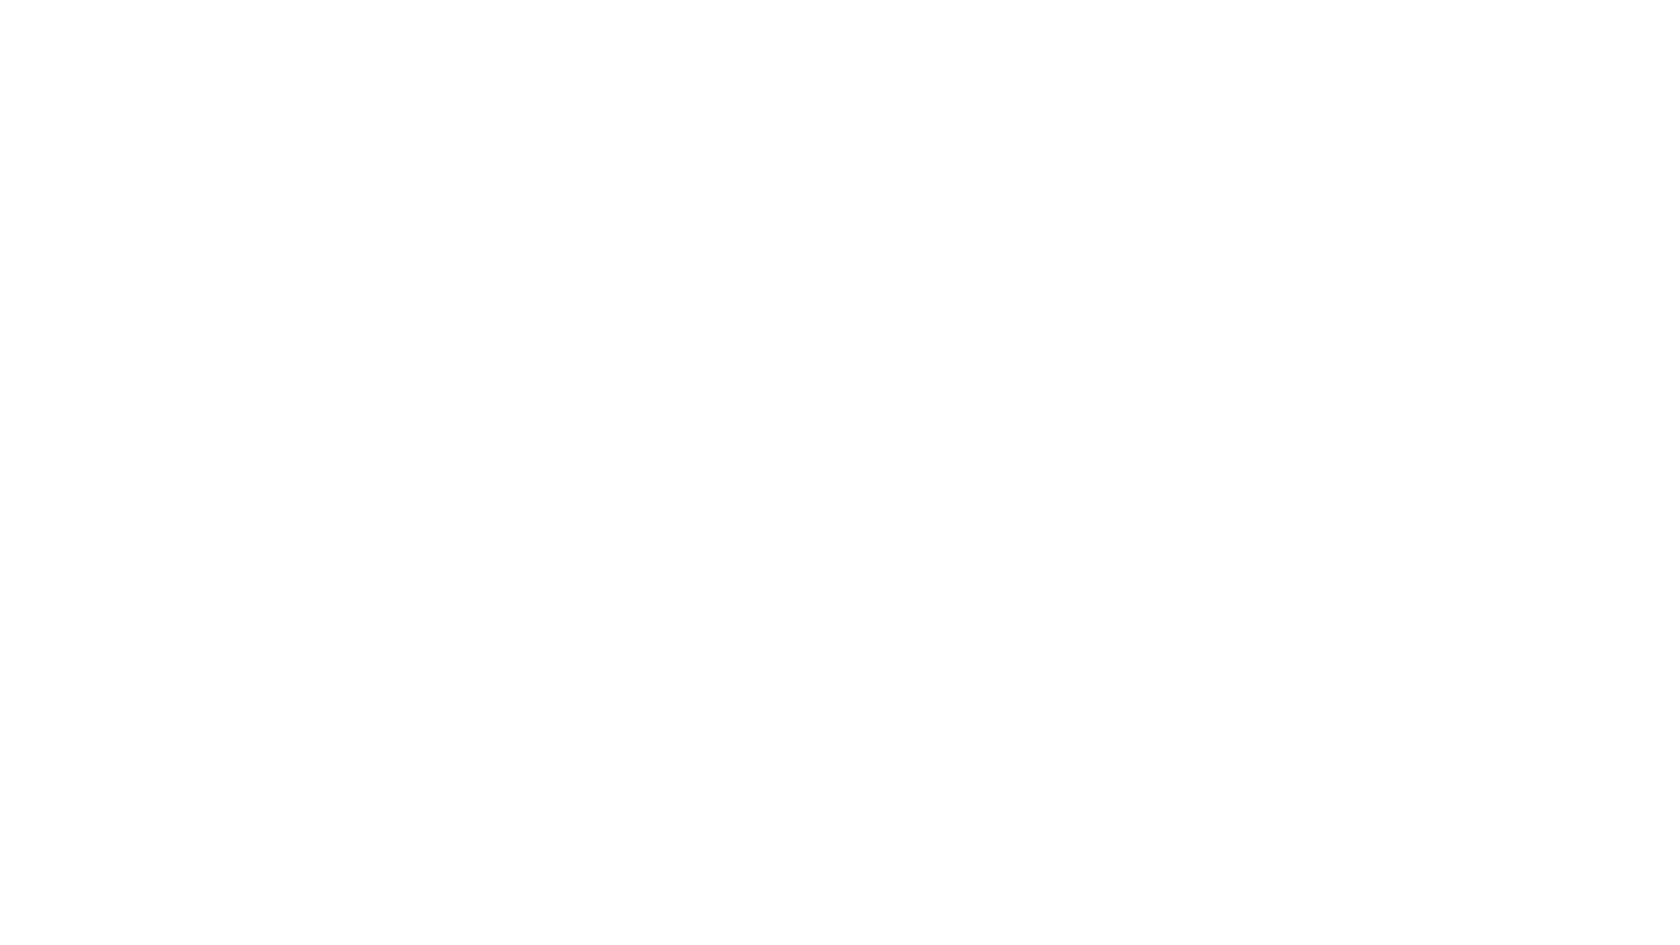 Қанат Ибрагимов пен Болат Әбілов «келіспейтіндер митингінде», 2012 жыл, 28 қаңтар, Алматы